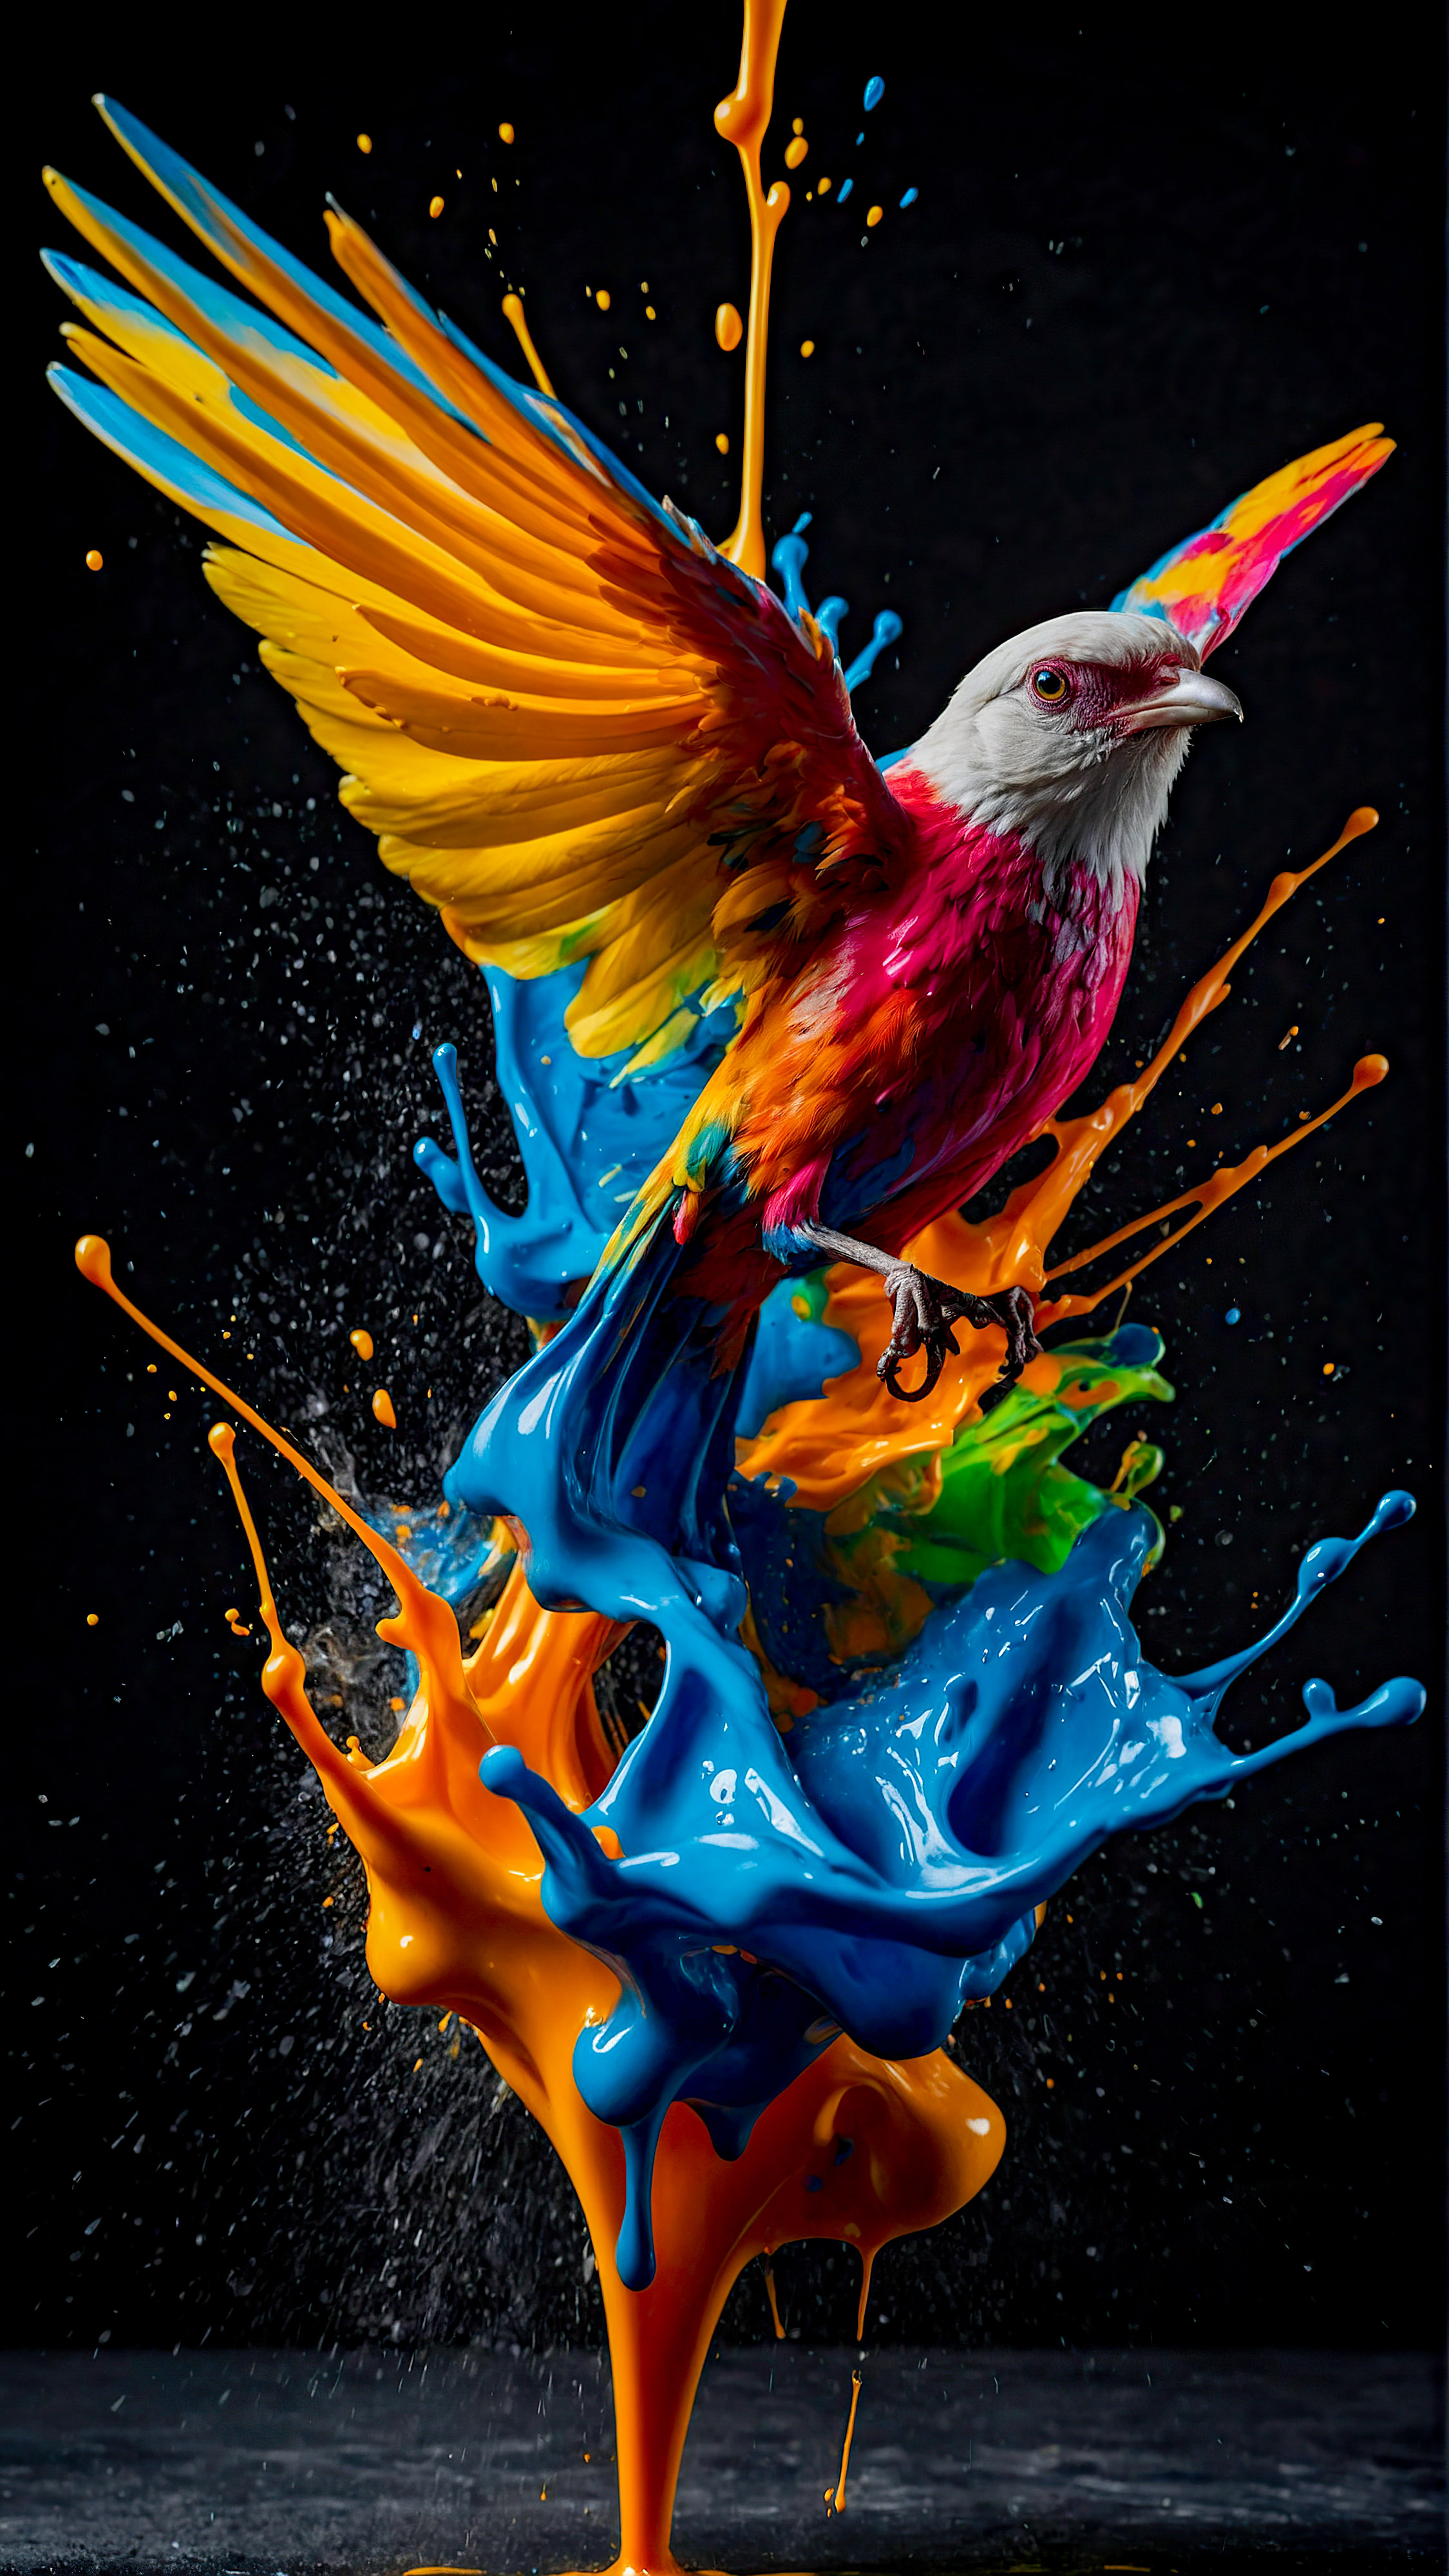 Découvrez la vibrance des couleurs avec notre fond d'écran iPhone 4K, présentant une éclaboussure dynamique et colorée de peinture, ressemblant à un oiseau en vol, contre un fond sombre.